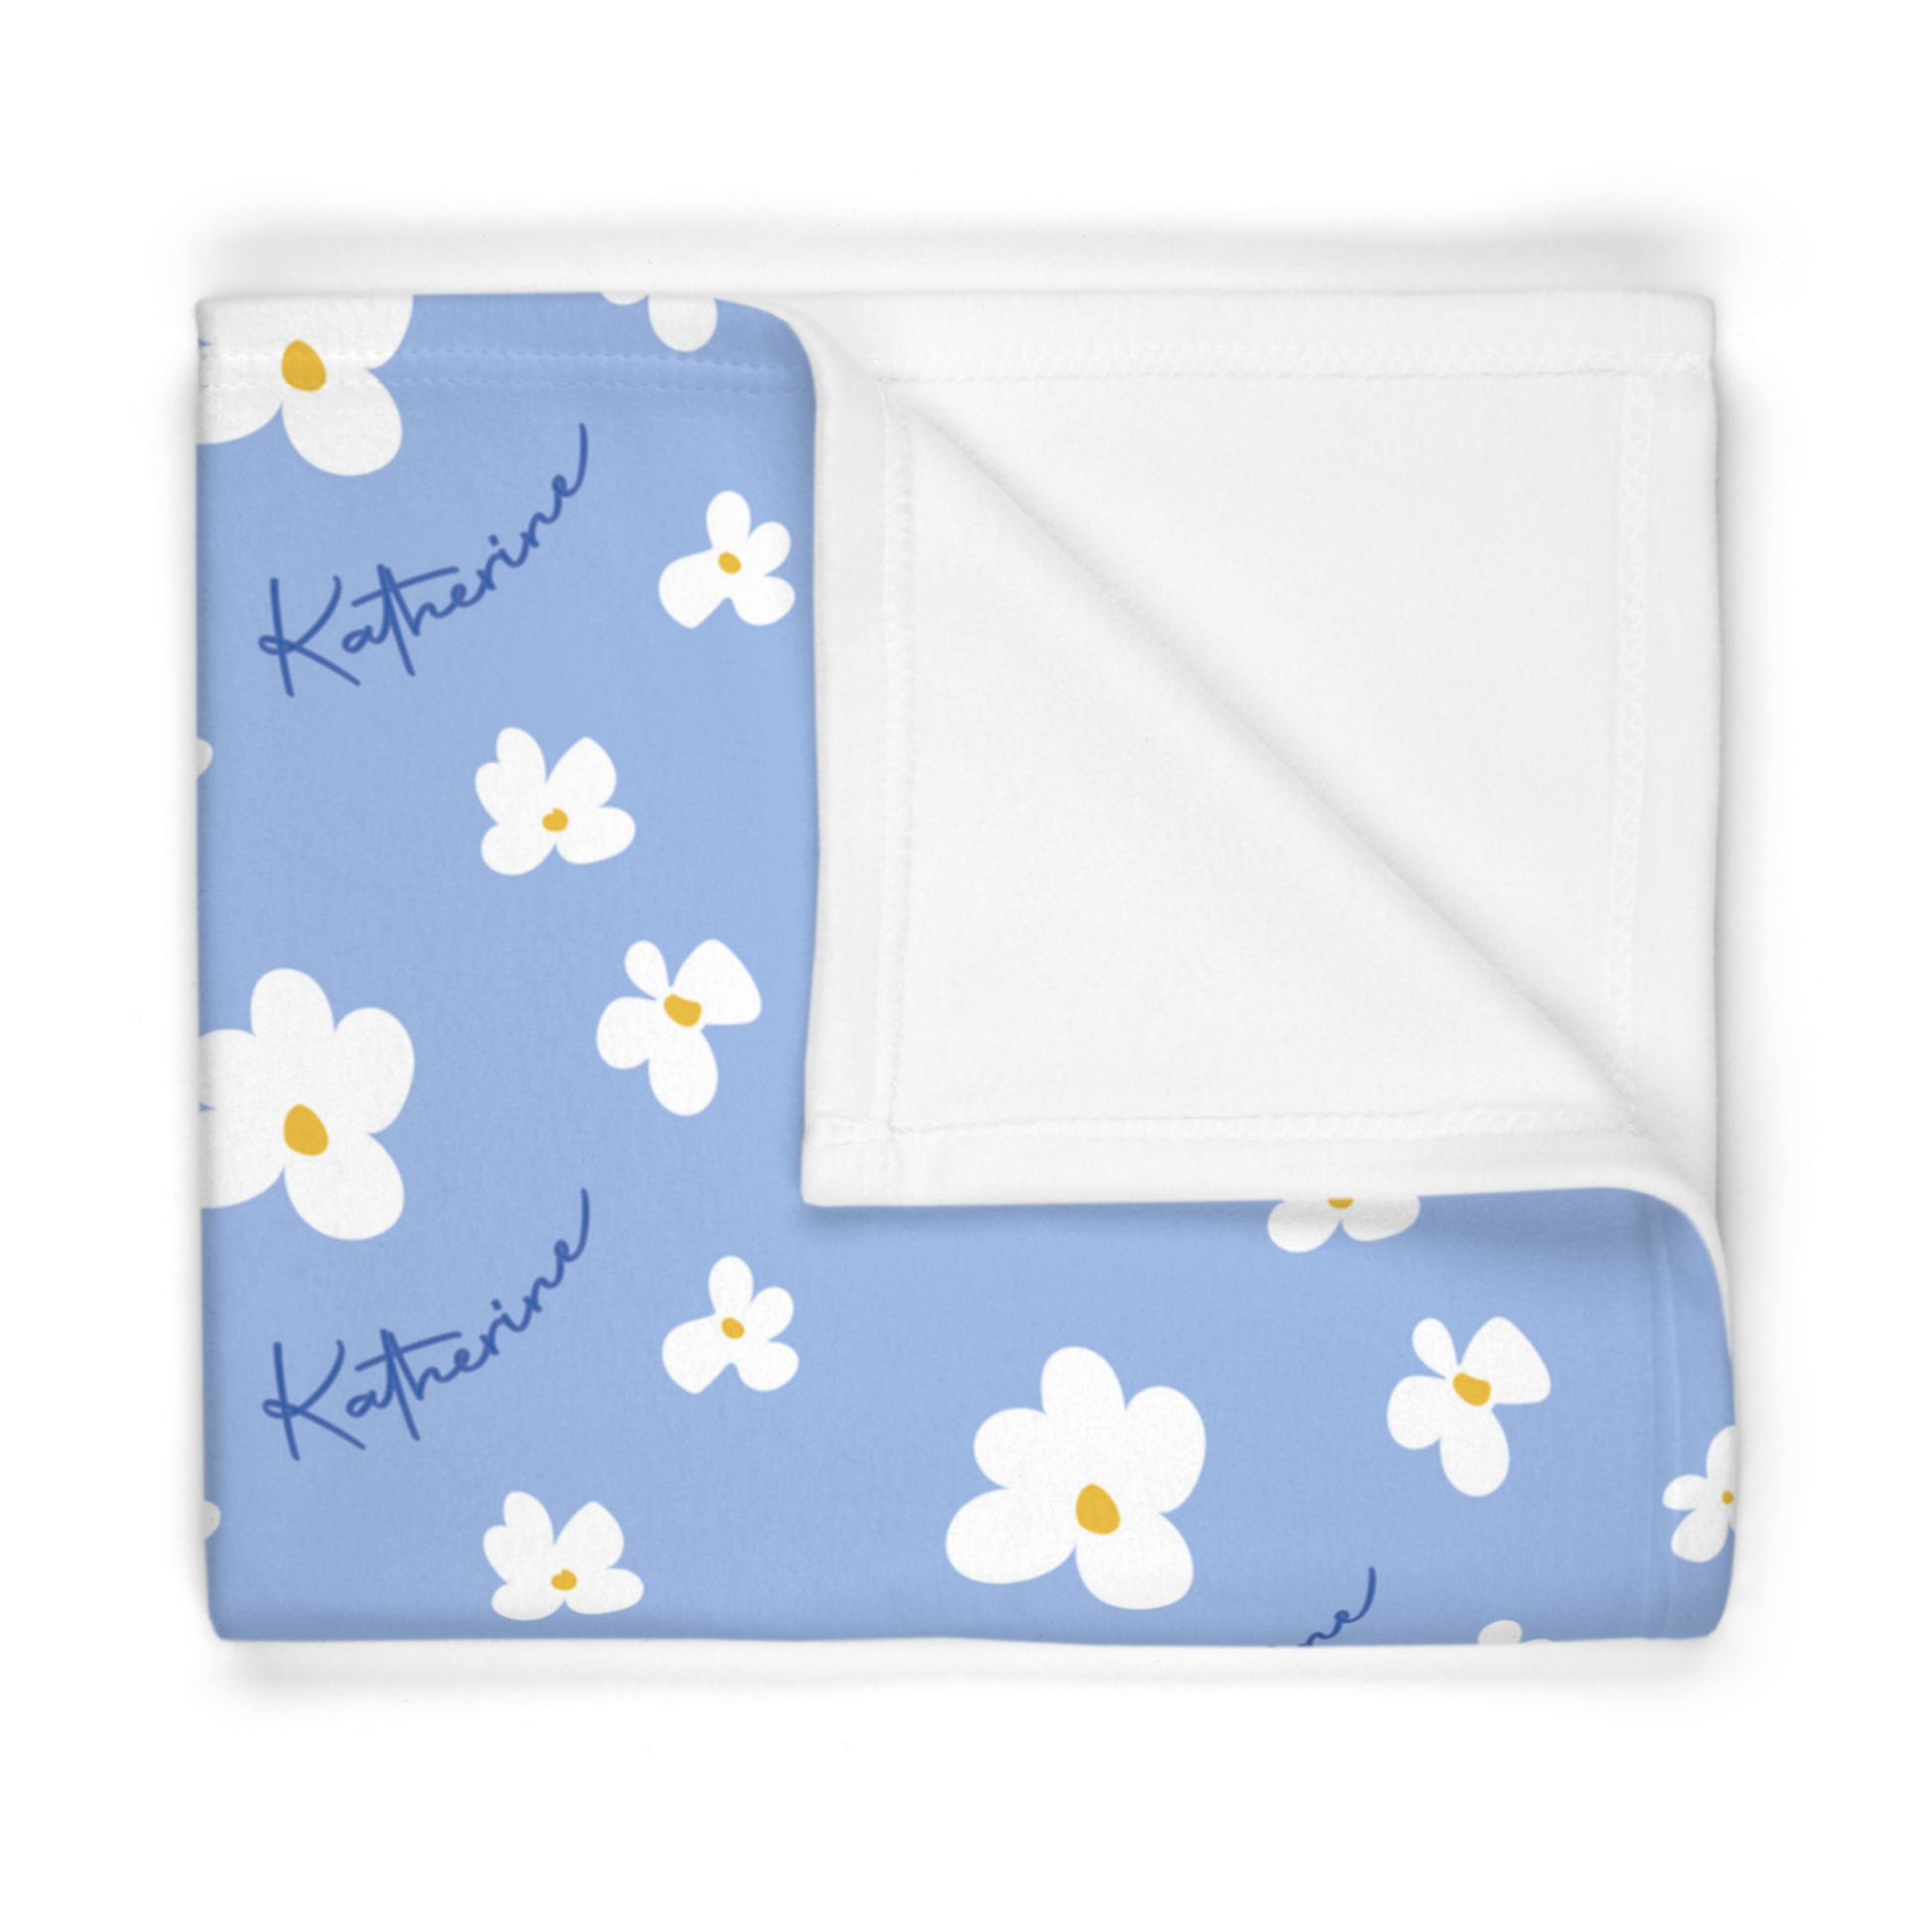 Folded fleece fabric personalized baby blanket in blue daisy pattern